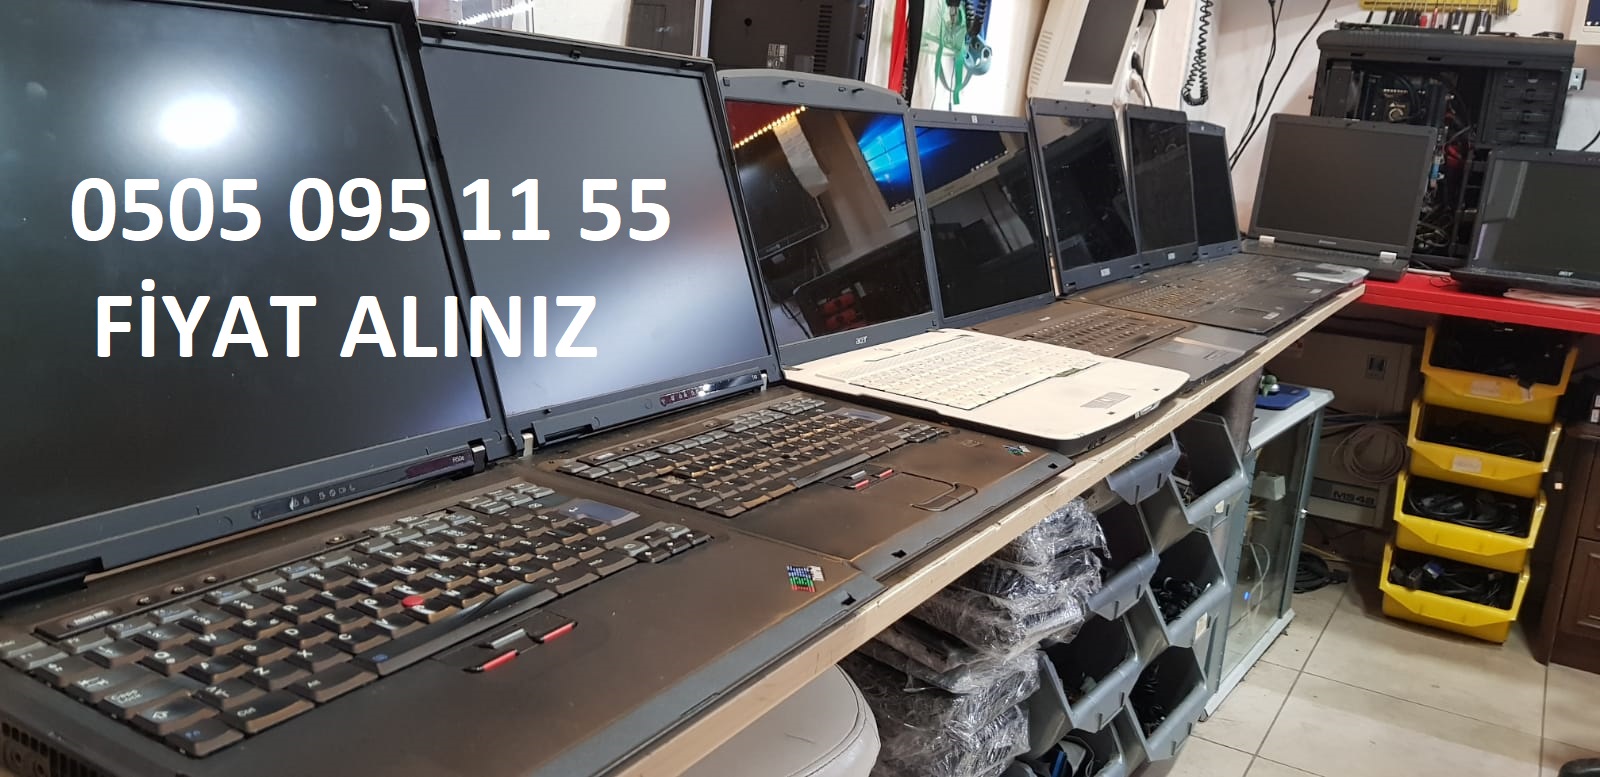 Bilgisayar Alımı Kızılay - Ankara Bilgisayar laptop Alım ve Satım - Ankara İçi Bilgisayar Alan yerler